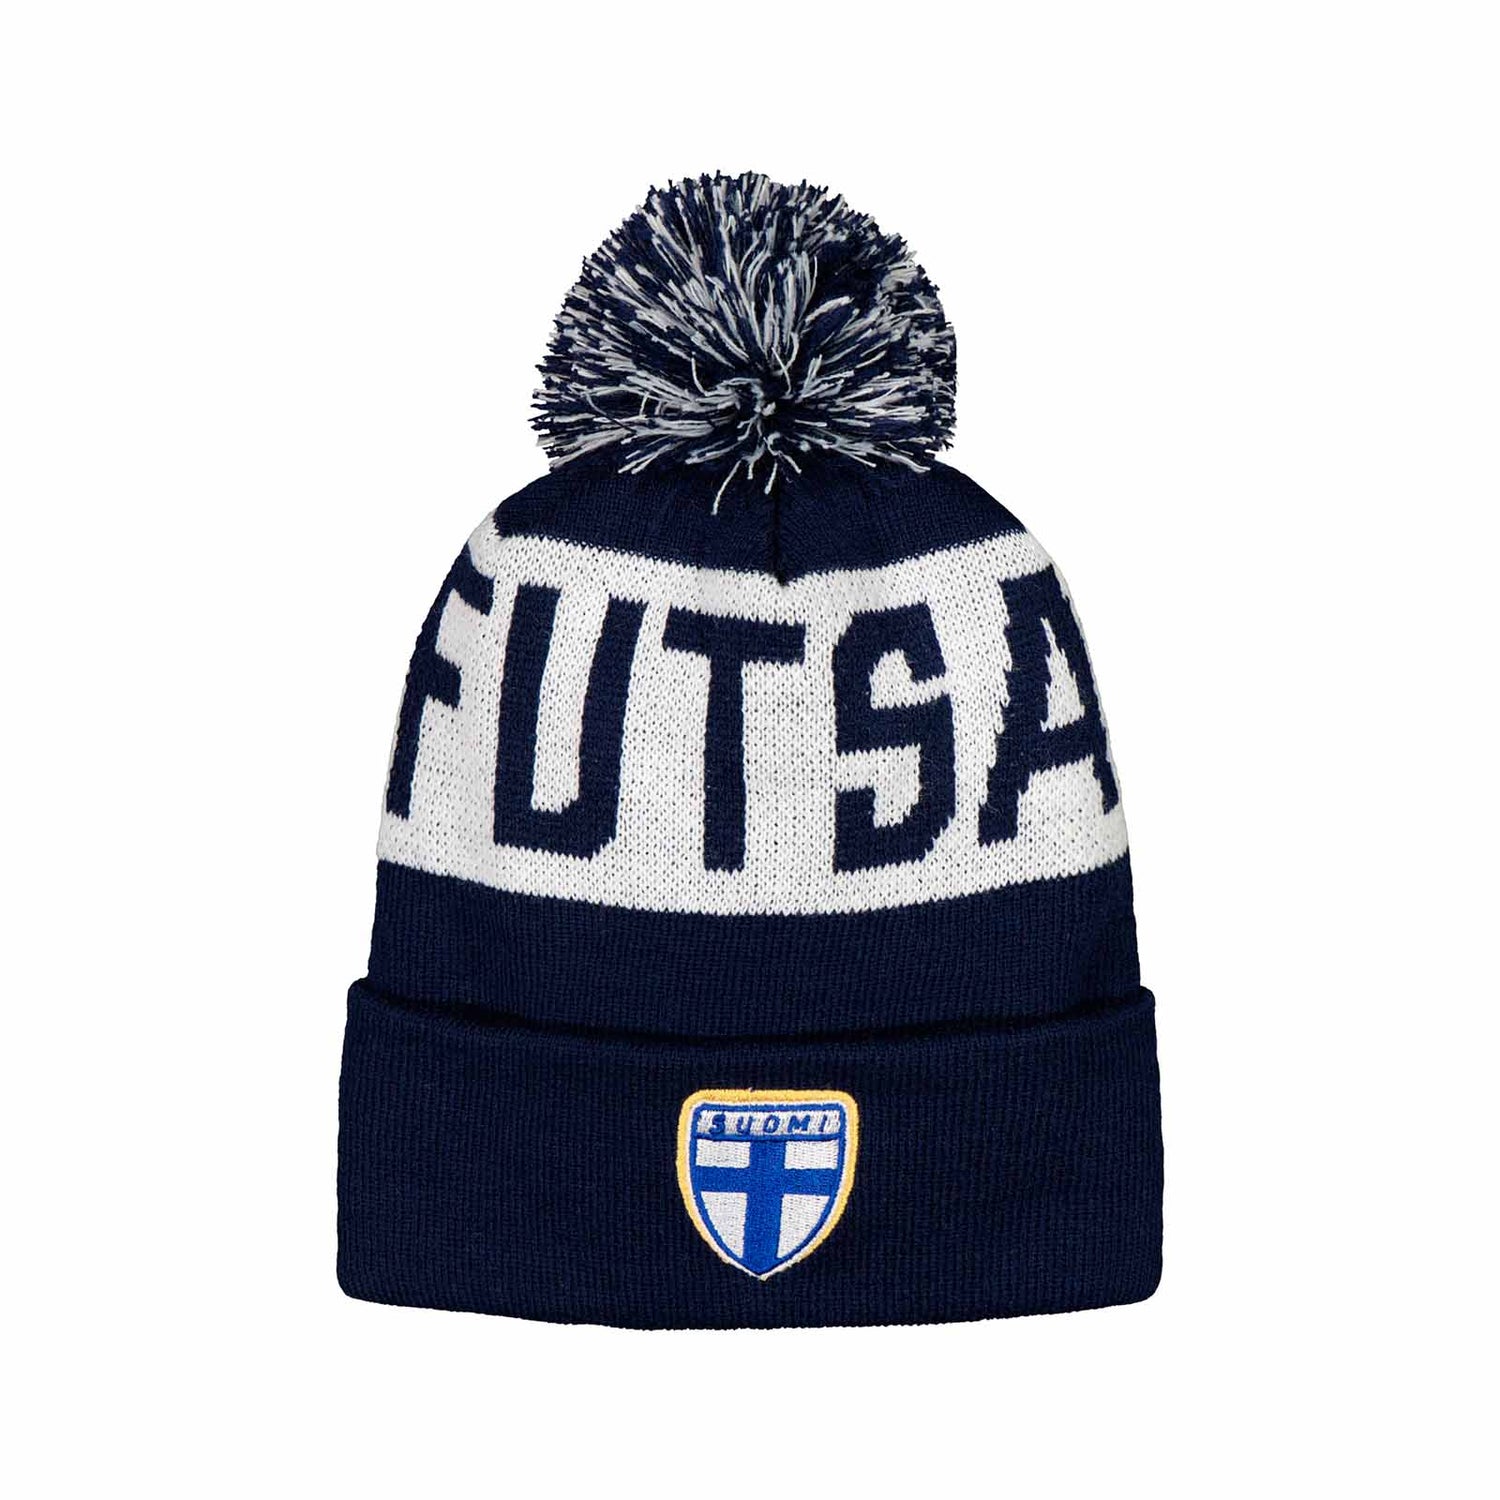 Suomen futsalmaajoukkueiden virallinen tupsupipo. Pipossa Suomi-logo ja teksti FUTSAL.